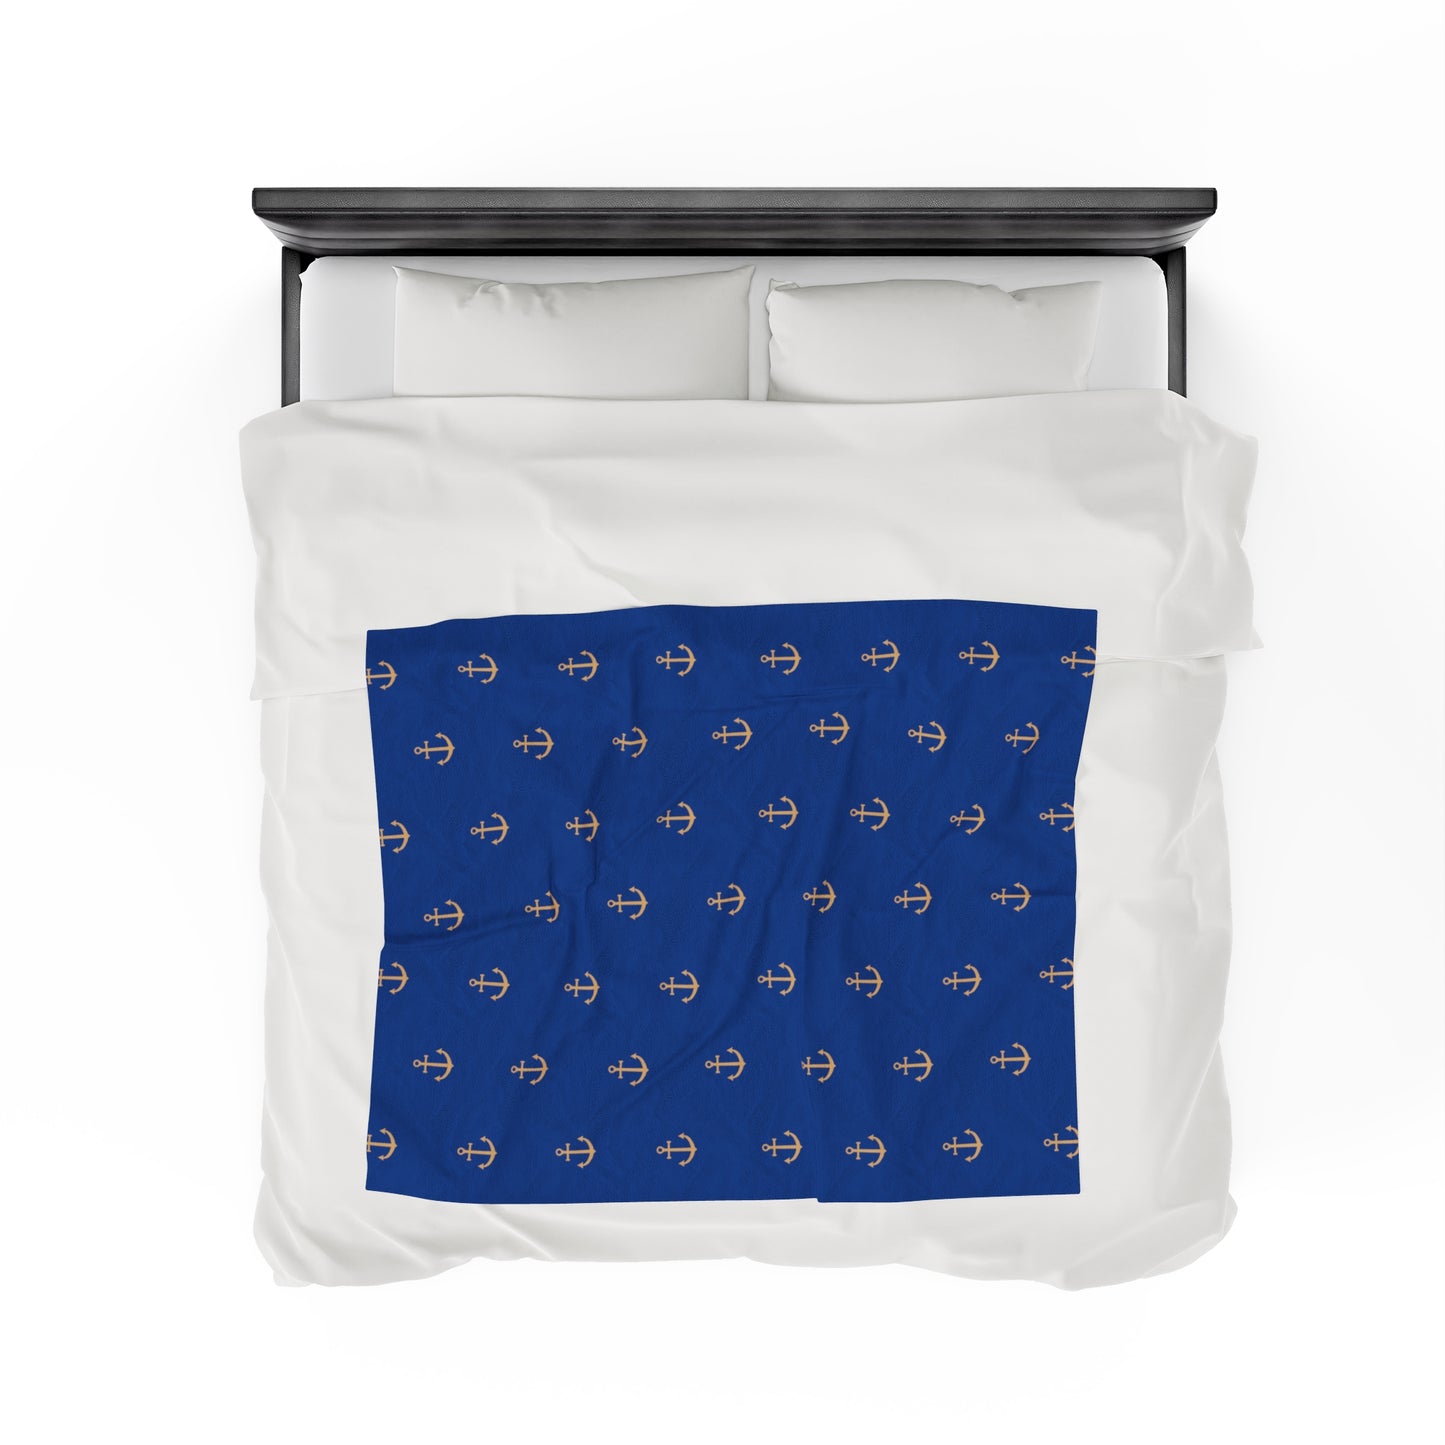 Anchors for days - Velveteen Plush Blanket (Blue)